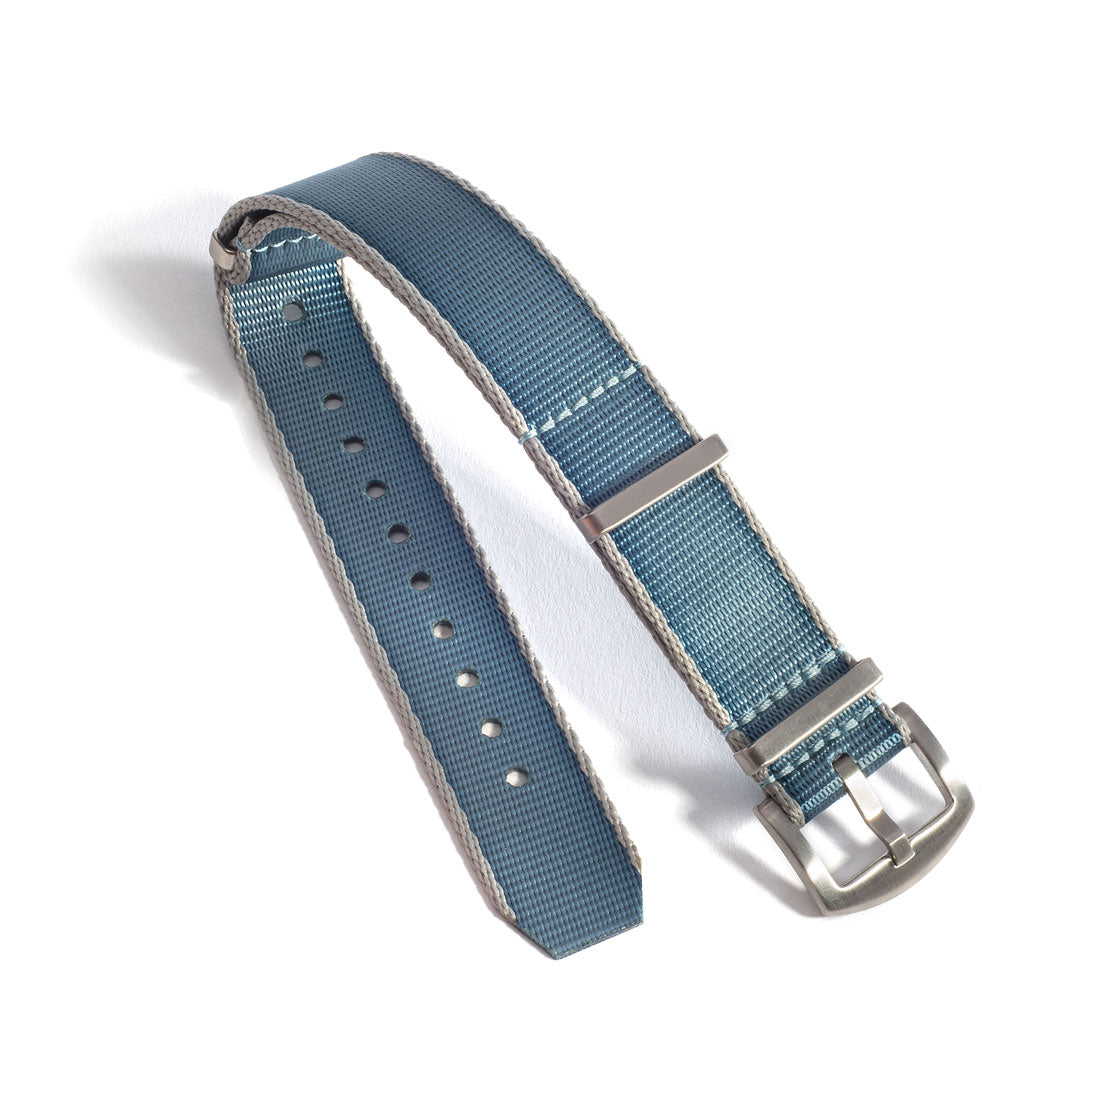 Turquoise Blue NATO-style Nylon Watch Band